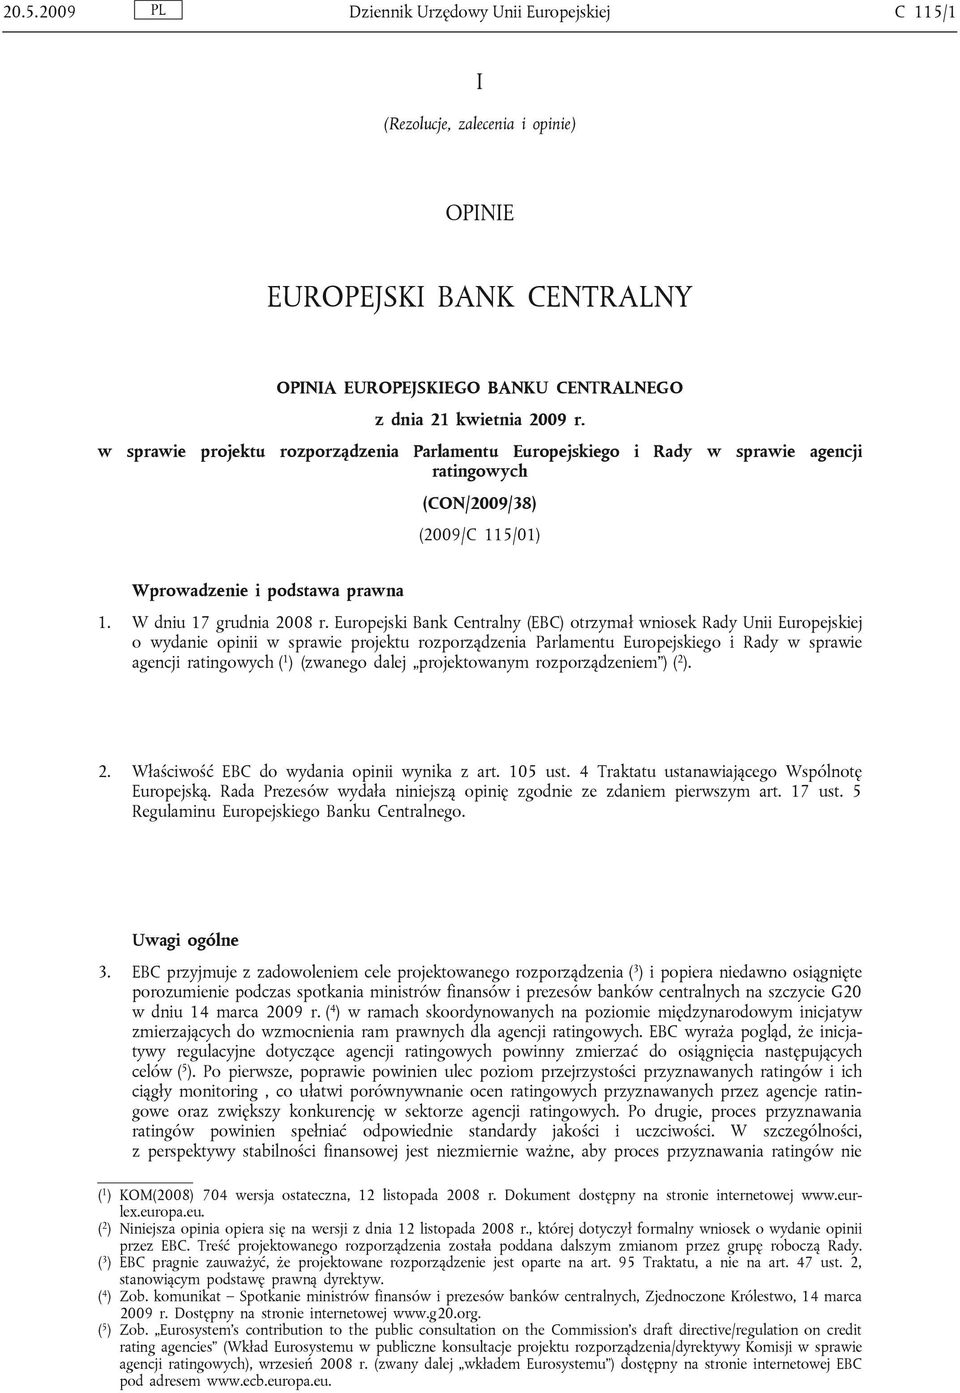 Europejski Bank Centralny (EBC) otrzymał wniosek Rady Unii Europejskiej o wydanie opinii w sprawie projektu rozporządzenia Parlamentu Europejskiego i Rady w sprawie agencji ratingowych ( 1 ) (zwanego